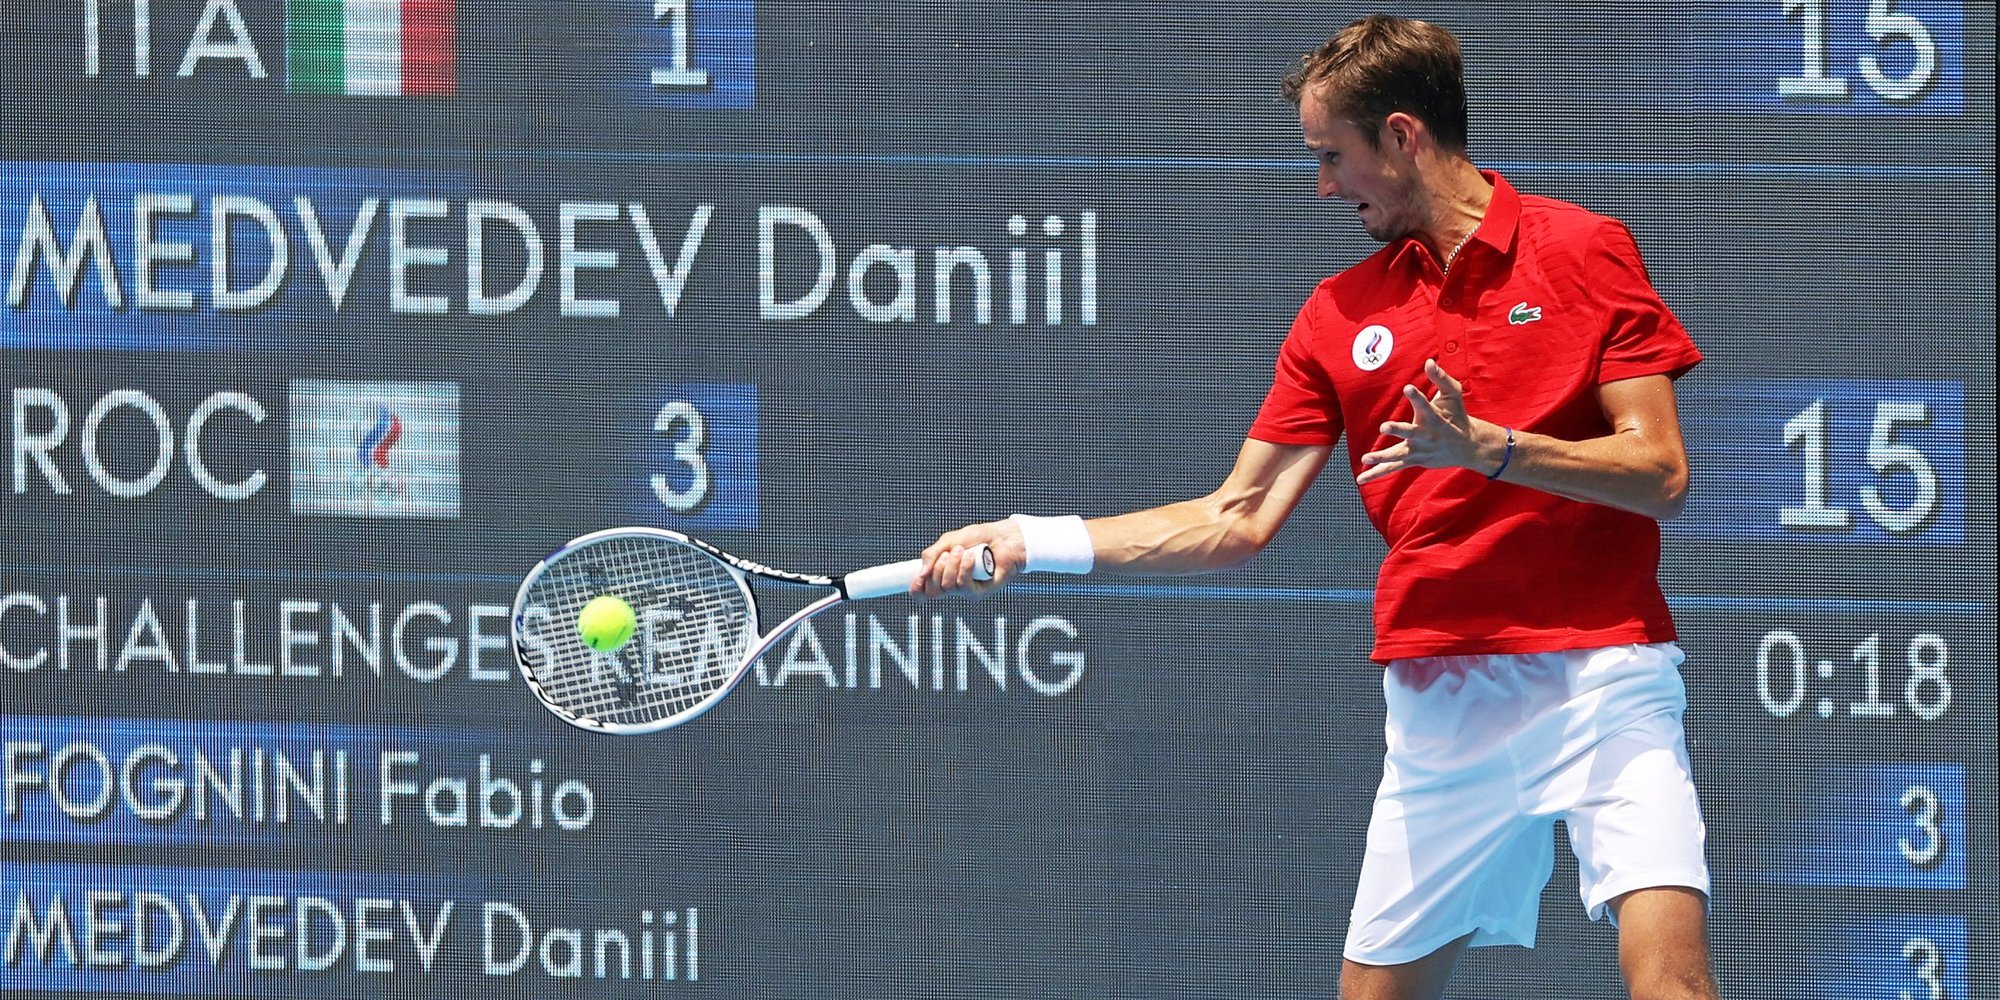 Даниил Медведев: «Еле выиграл у Каррено-Бусты в трех сетах на турнире в Майоре. Будет непростой четвертьфинал»